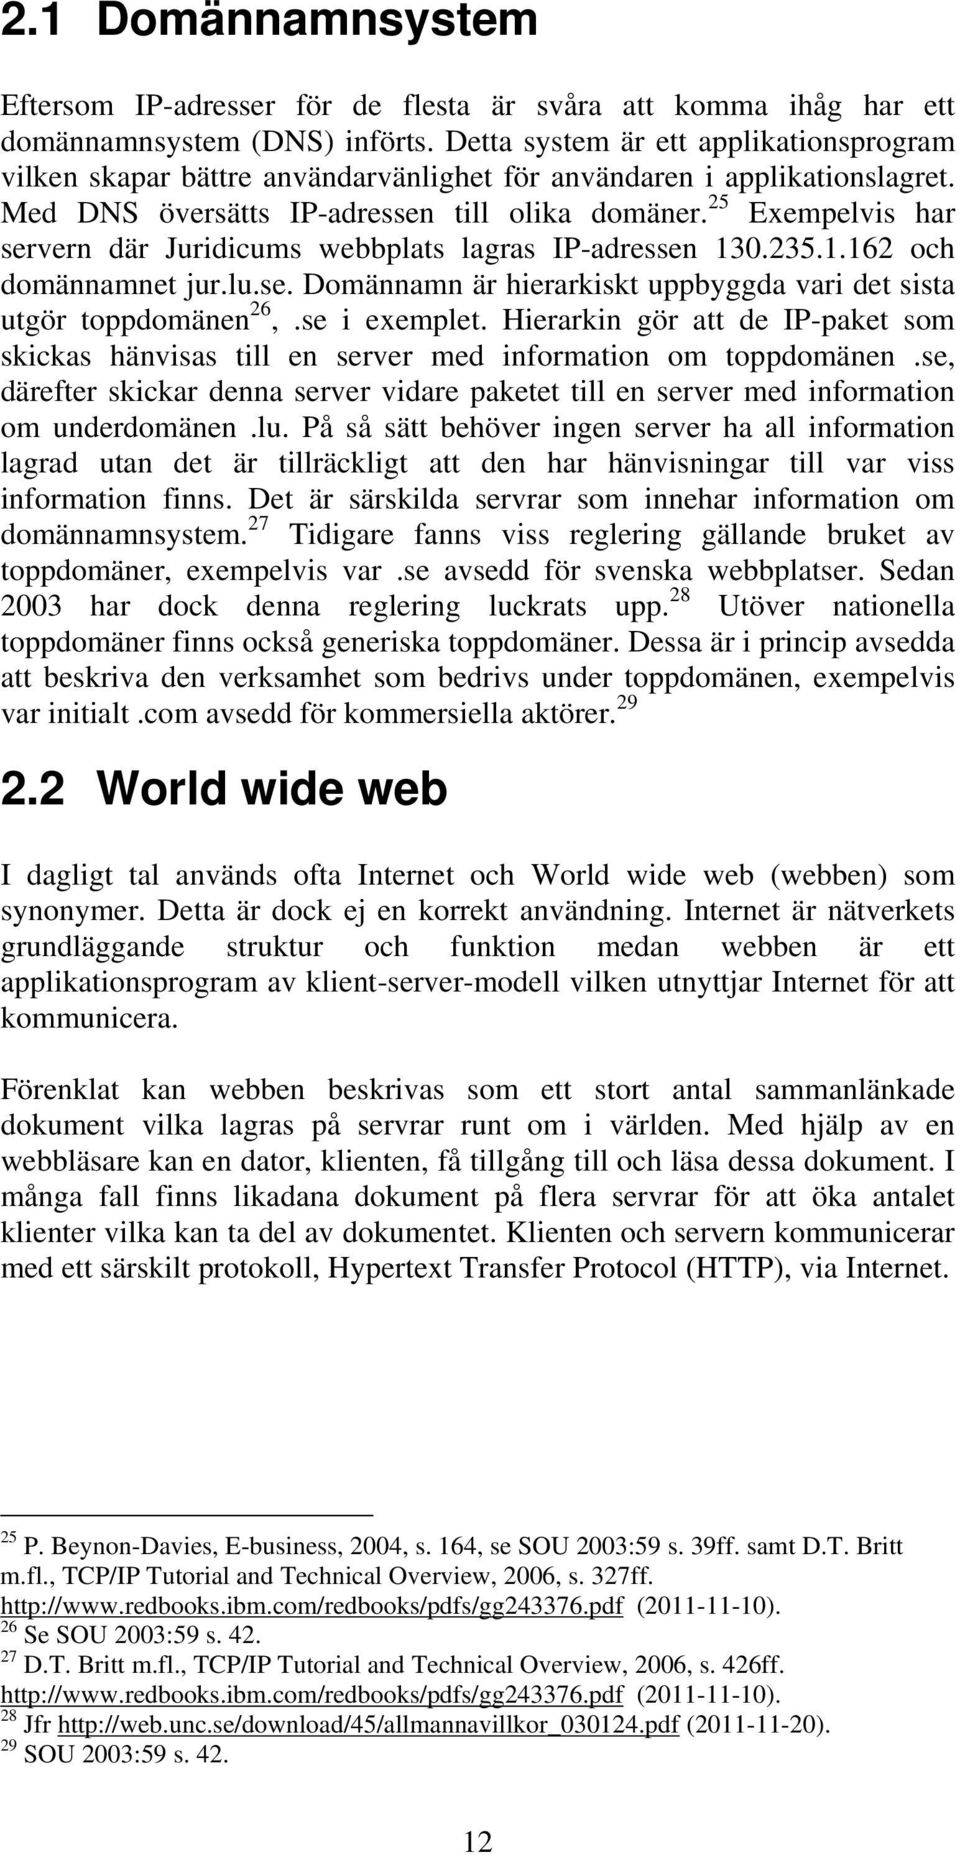 25 Exempelvis har servern där Juridicums webbplats lagras IP-adressen 130.235.1.162 och domännamnet jur.lu.se. Domännamn är hierarkiskt uppbyggda vari det sista utgör toppdomänen 26,.se i exemplet.